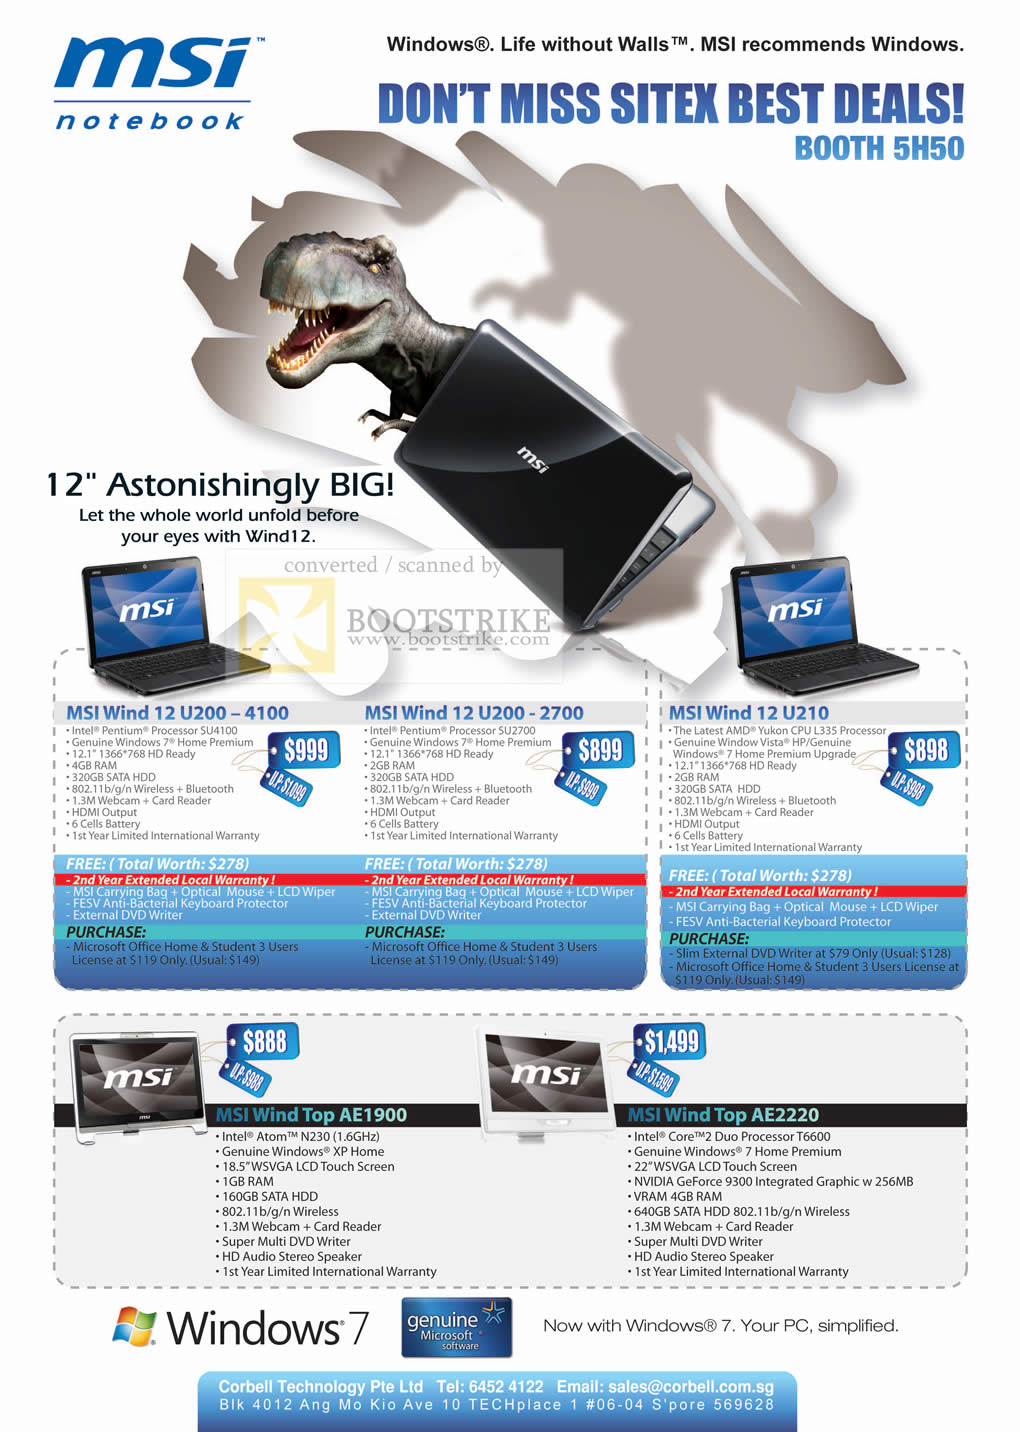 Sitex 2009 price list image brochure of MSI Notebook Wind 12 U200 4100 2700 U210 Top AE1900 AE2220